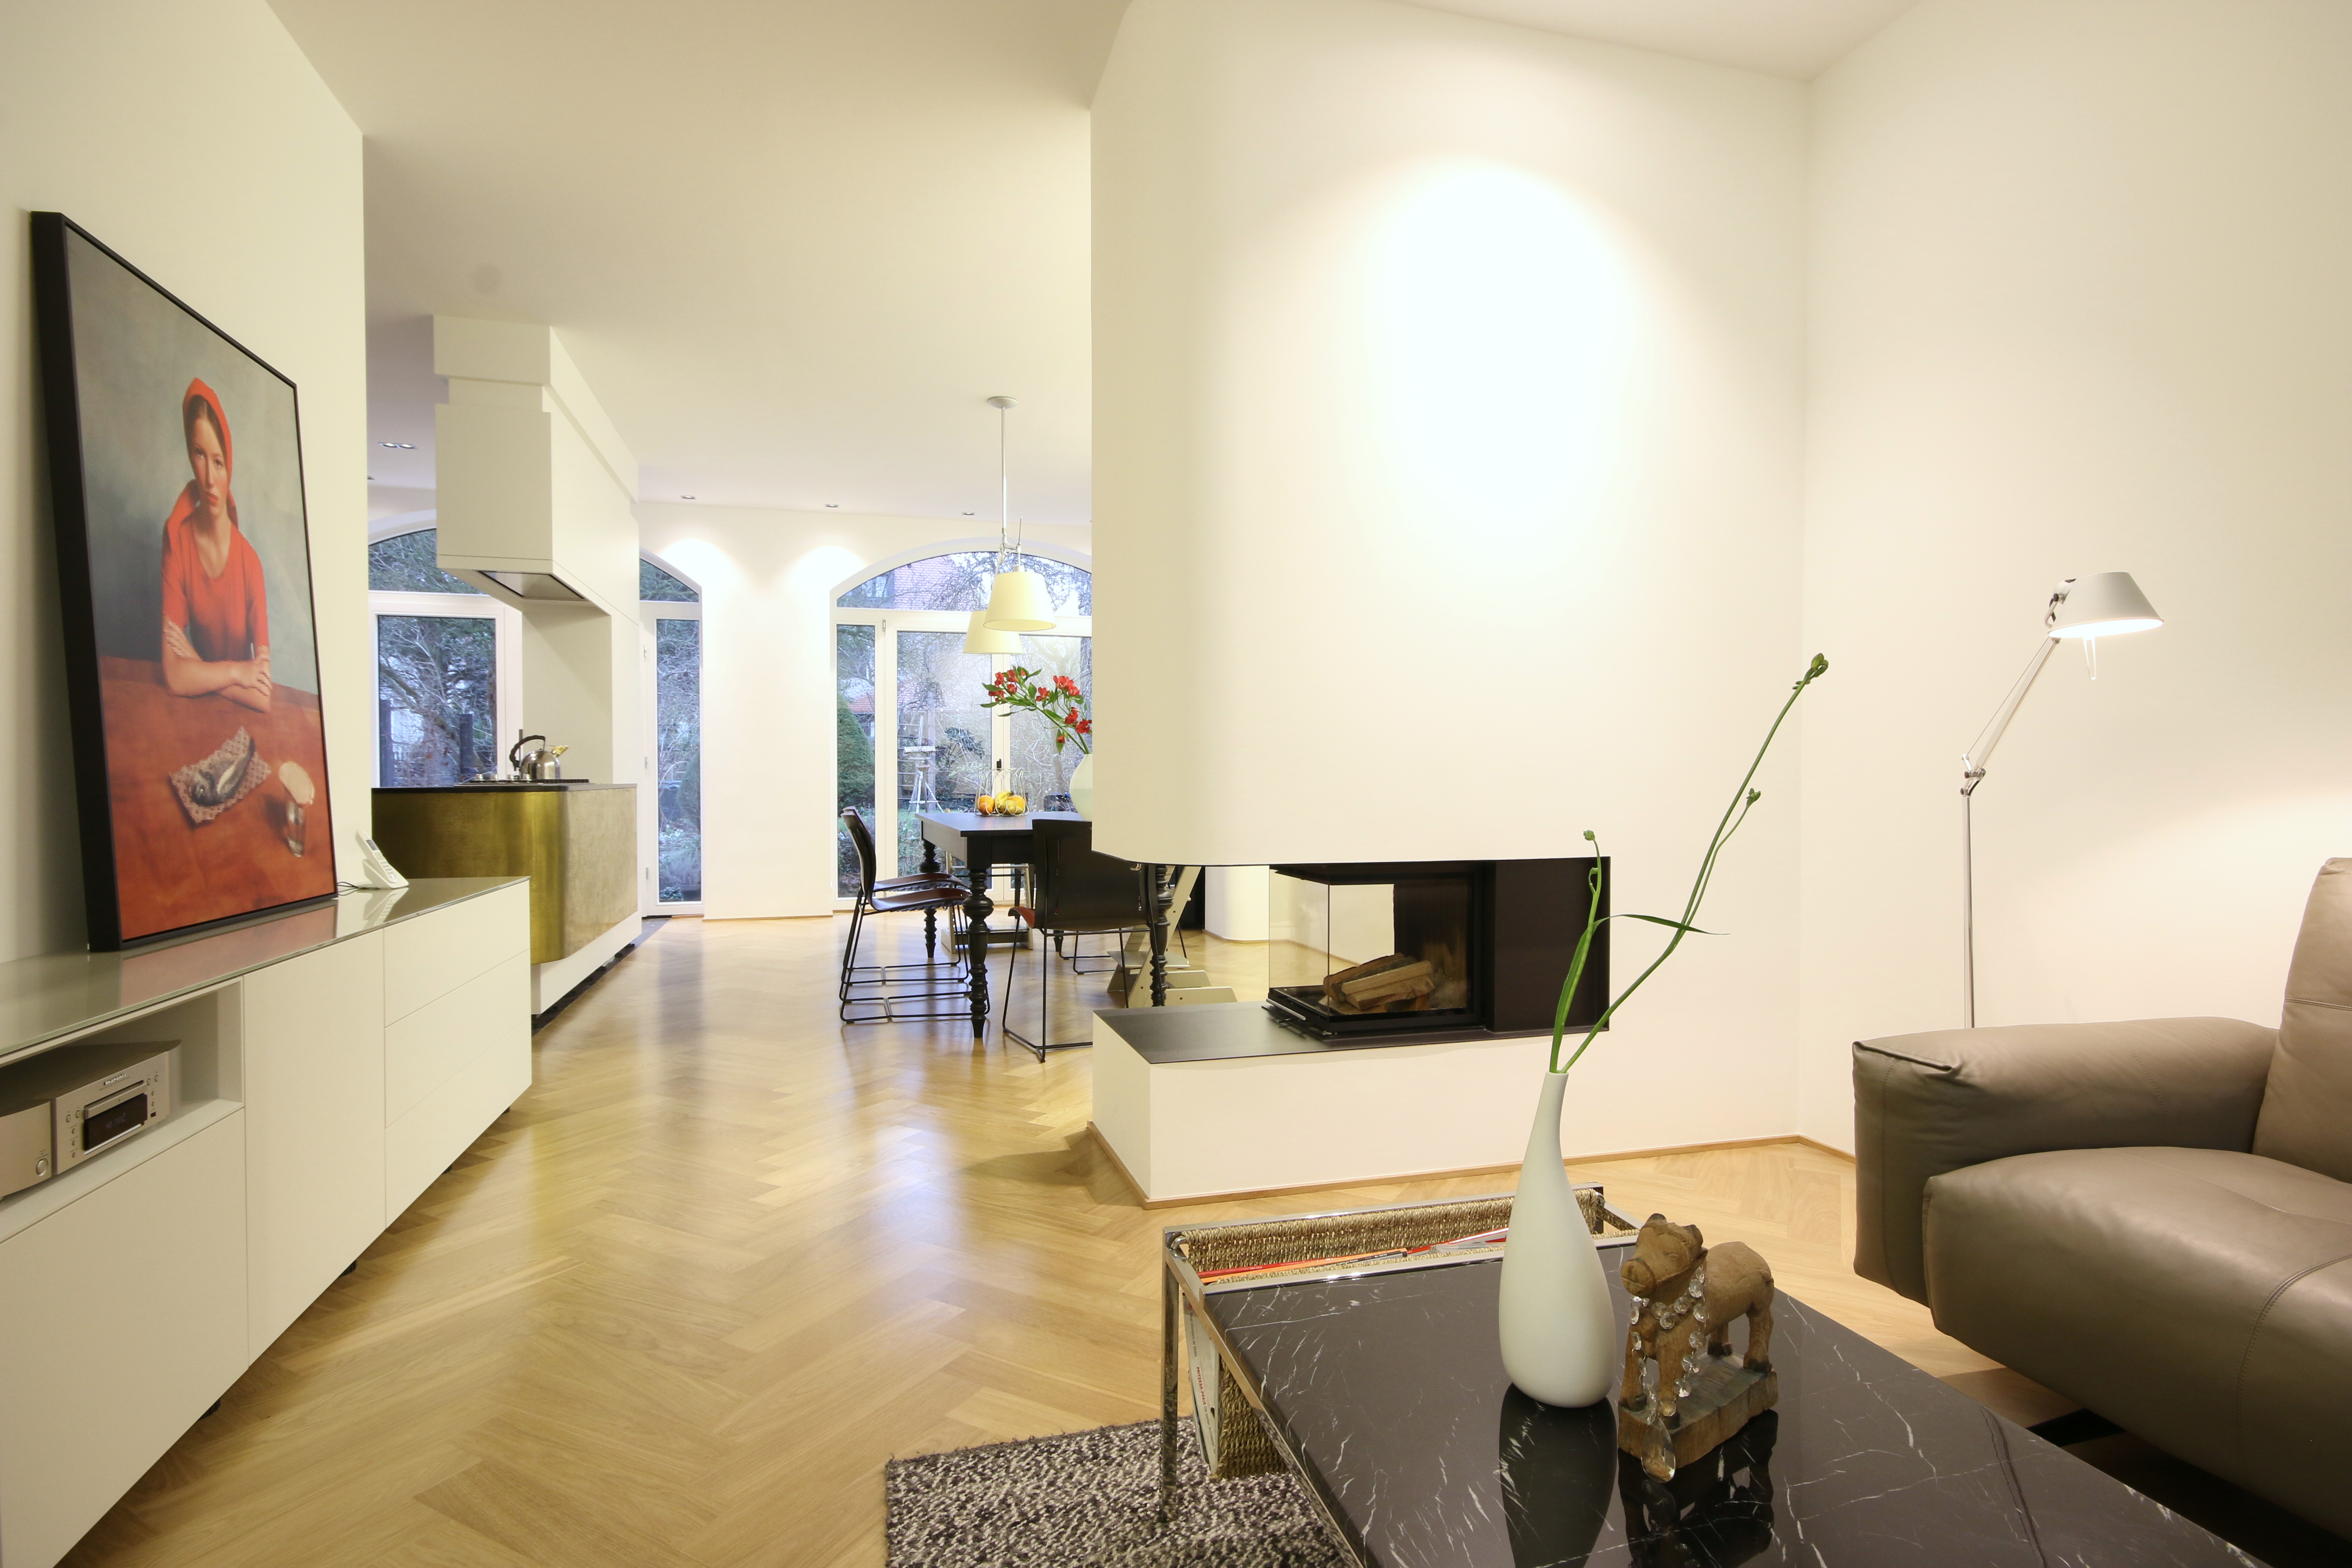 Küche und Wohnzimmermöbel von der Tischlerei Boldt Innenausbau GmbH in Leipzig geplant und gefertigt